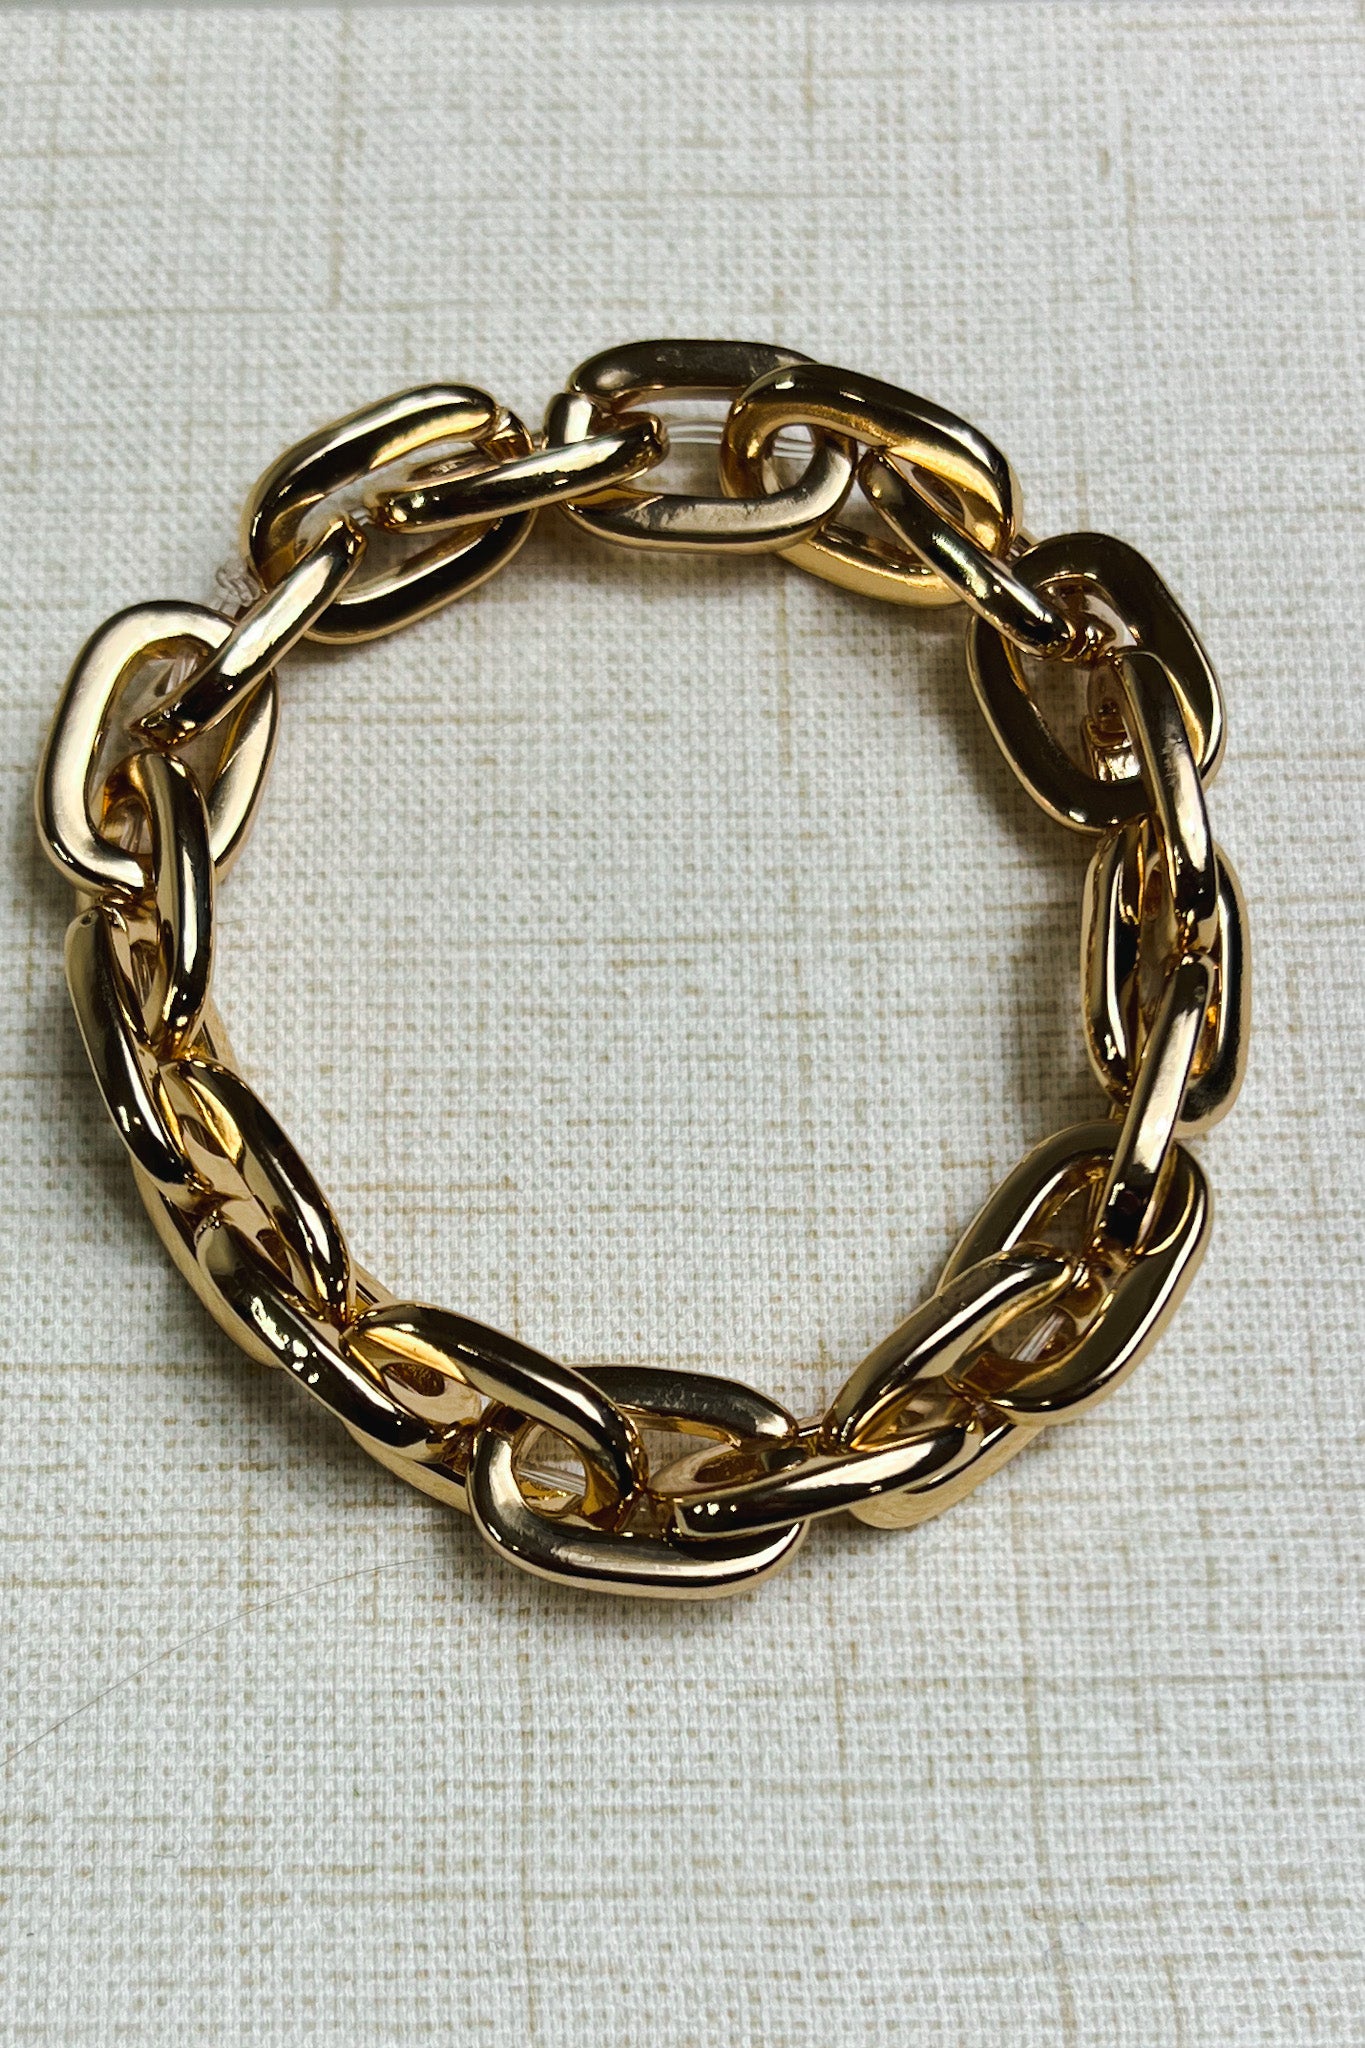 Gold Cuban Link Bracelets Women | Acrylic Chain Big Silver Links - Chain  Bracelet - Aliexpress